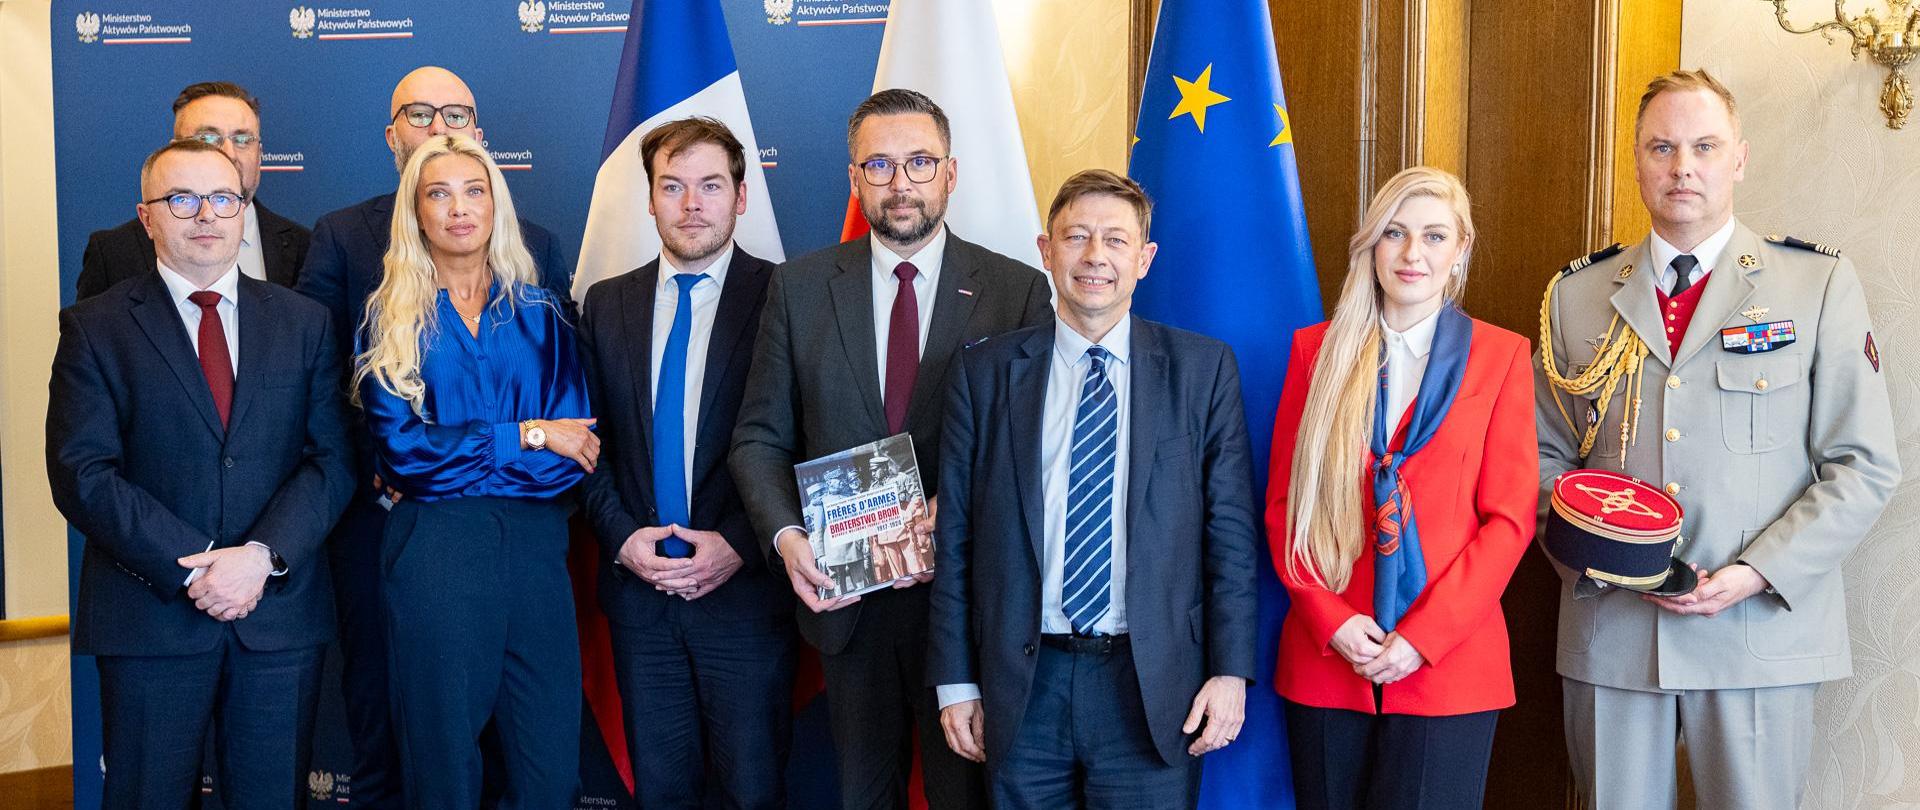 Członkowie delegacji stoją na tle flag Francji, Polski i Unii Europejskiej. Wiceminister Kulasek w środku. Na zdjęciu znajduje się 9 osób.